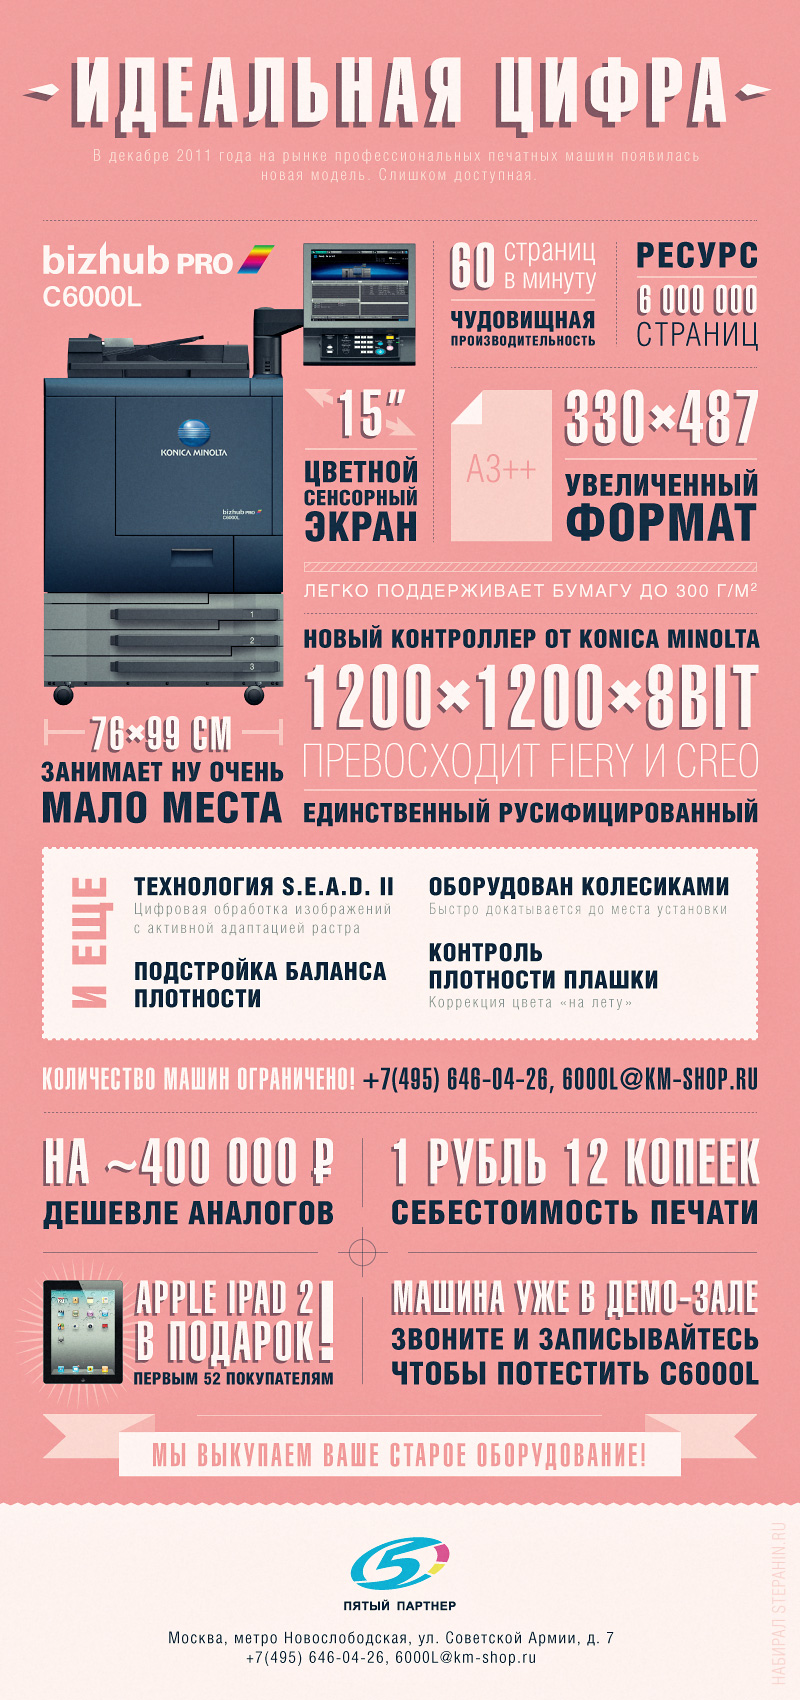 Bizhub PRO C6000L акция, цена и отзывы по себестоимости печати Konica Minolta